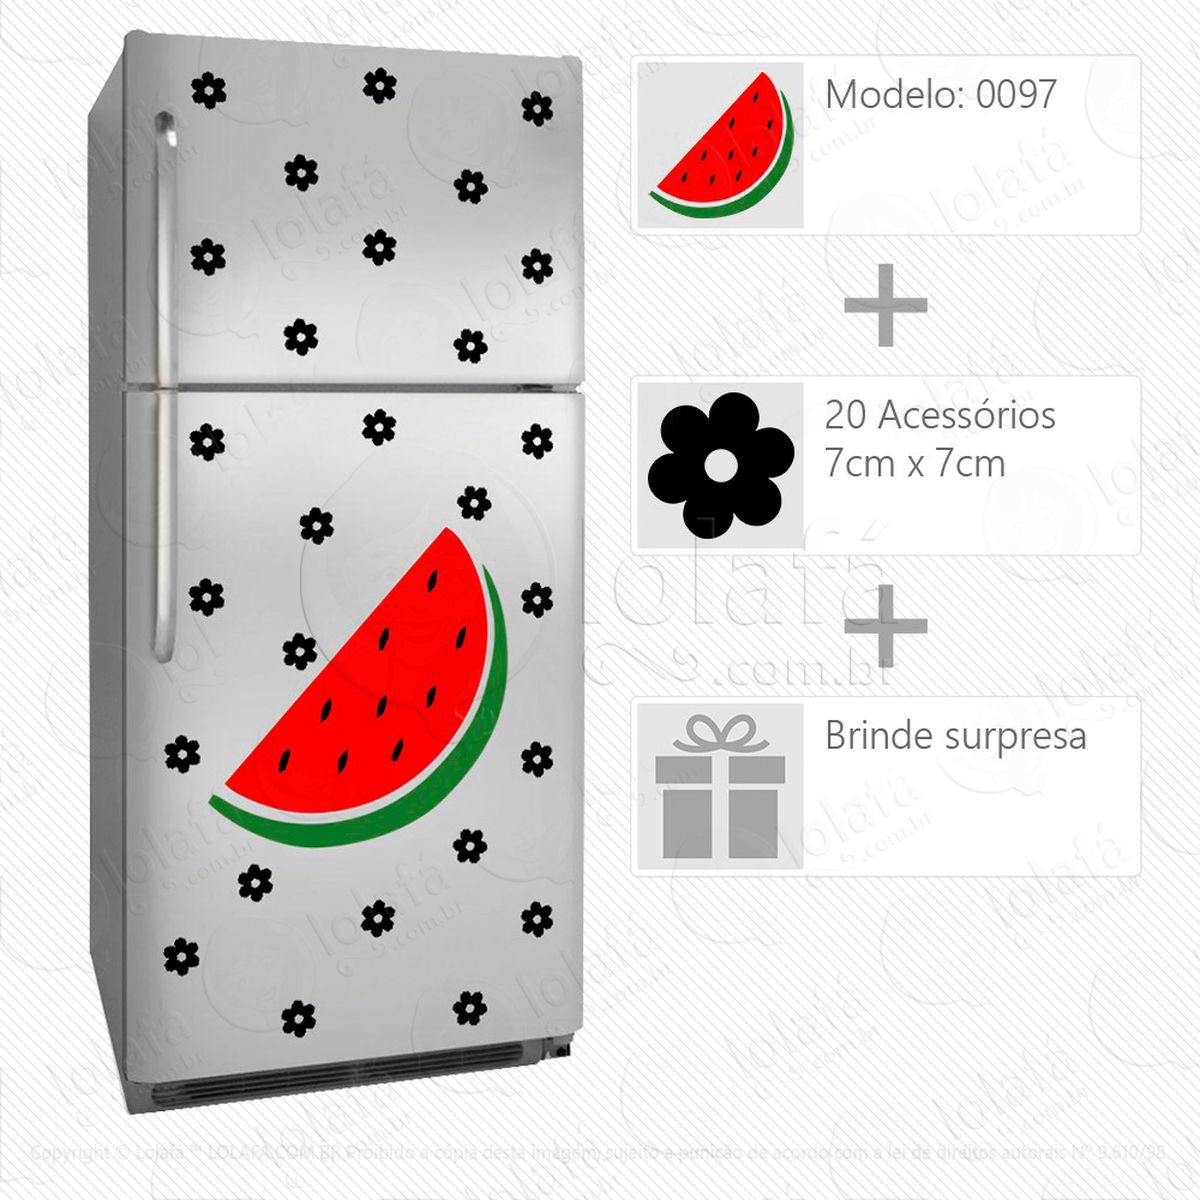 melancia adesivo para geladeira e frigobar - mod:97